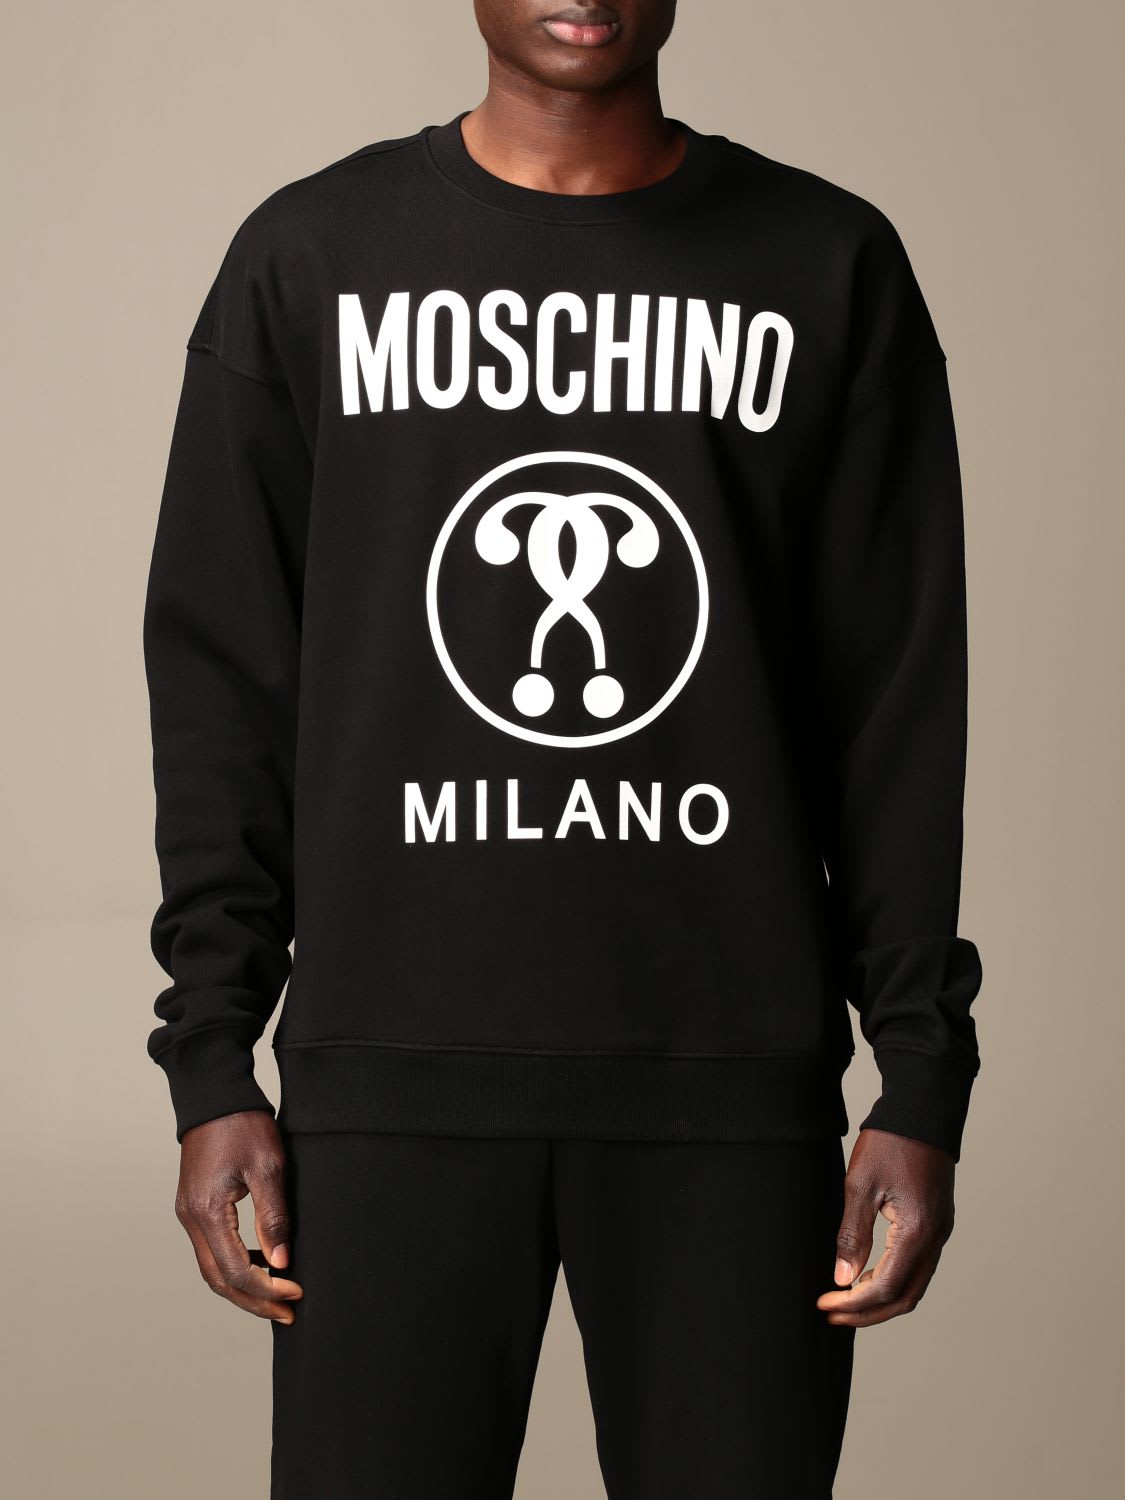 Moschino Couture Sweatshirt Moschino Couture Cotton Sweatshirt With Logo